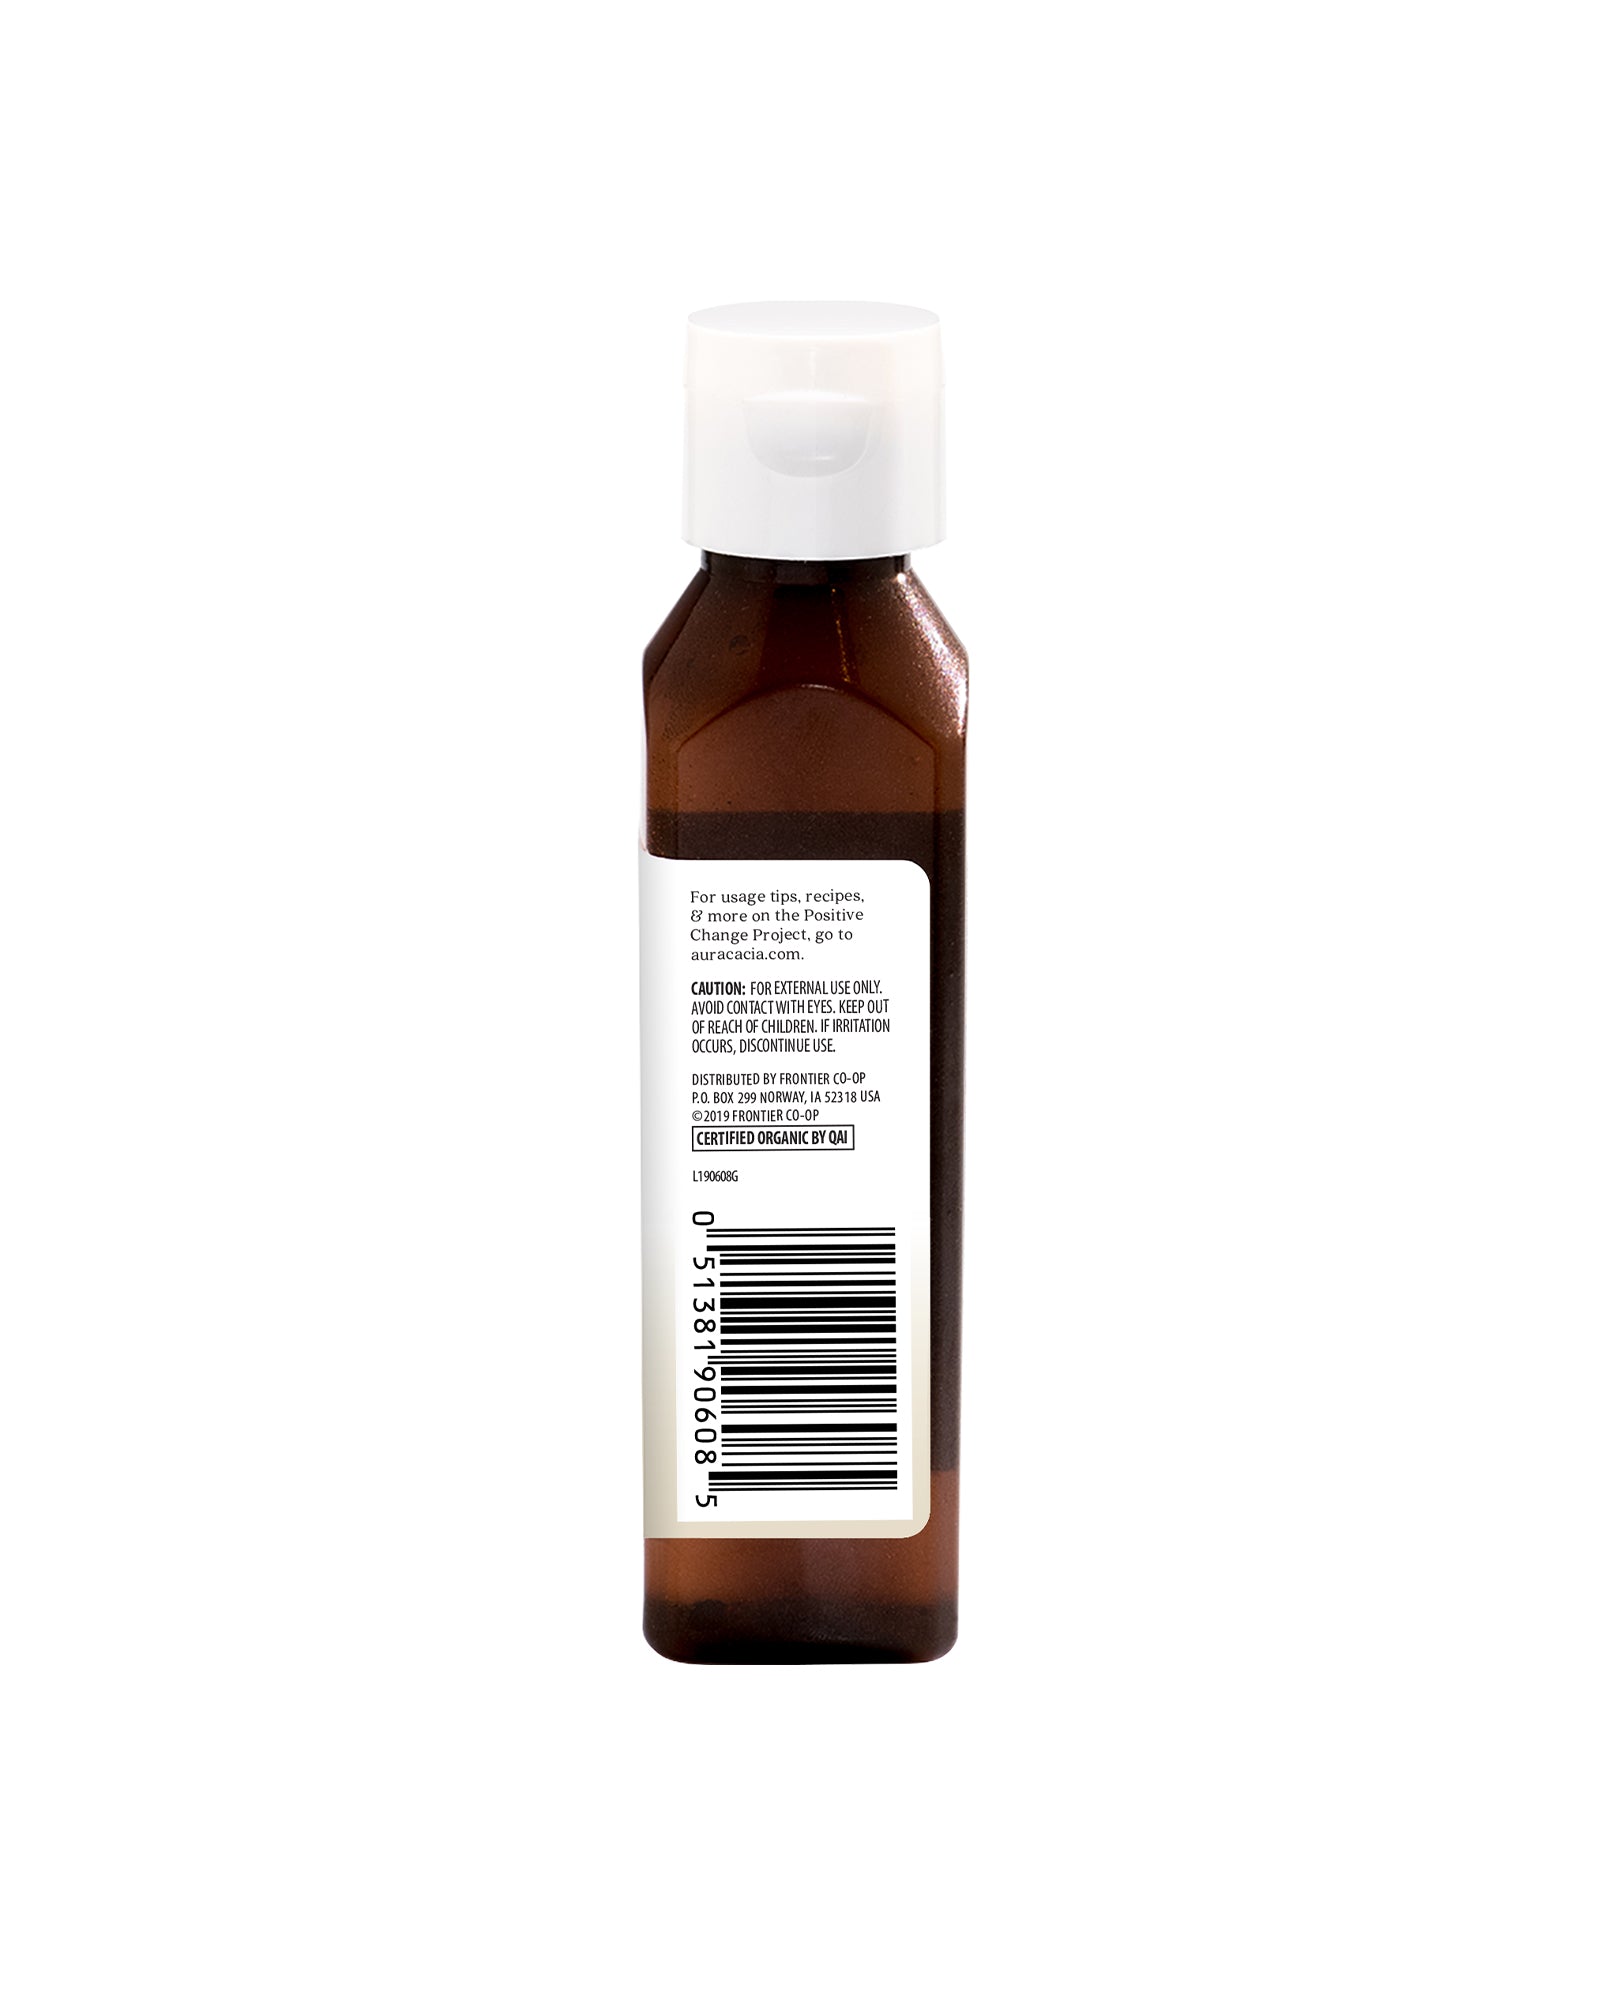 Aura Cacia Frankincense (in jojoba oil) 0.5 fl. oz.